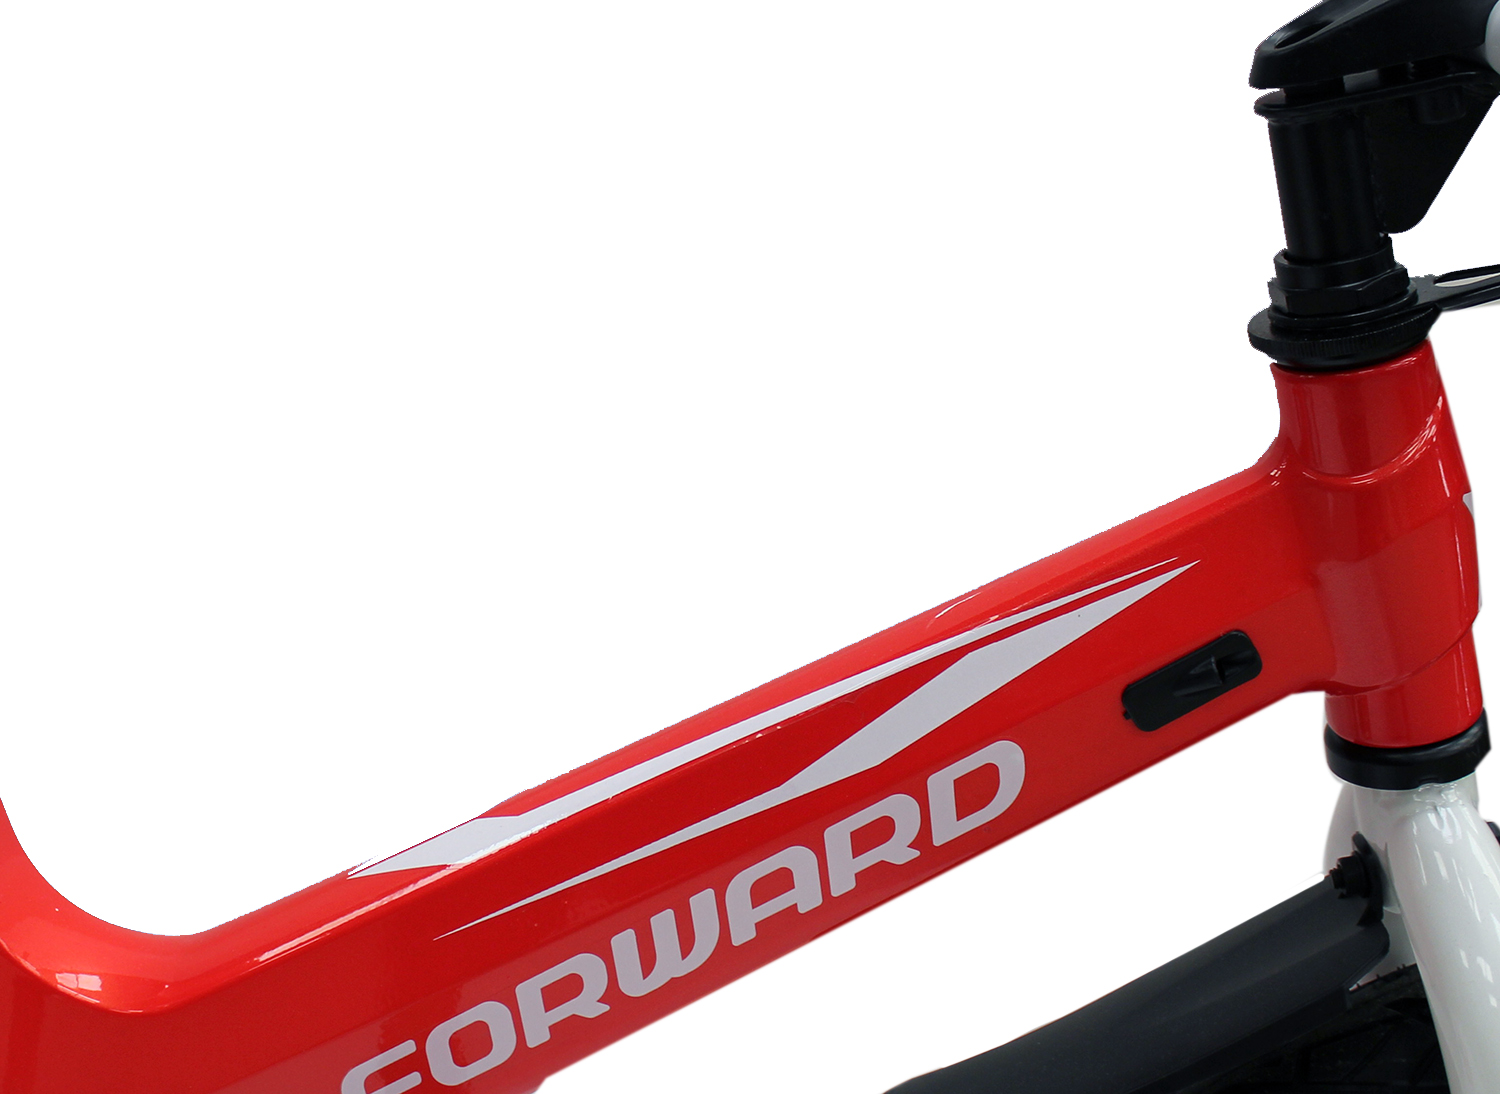 Велосипед Forward Cosmo 18 2021 Красный